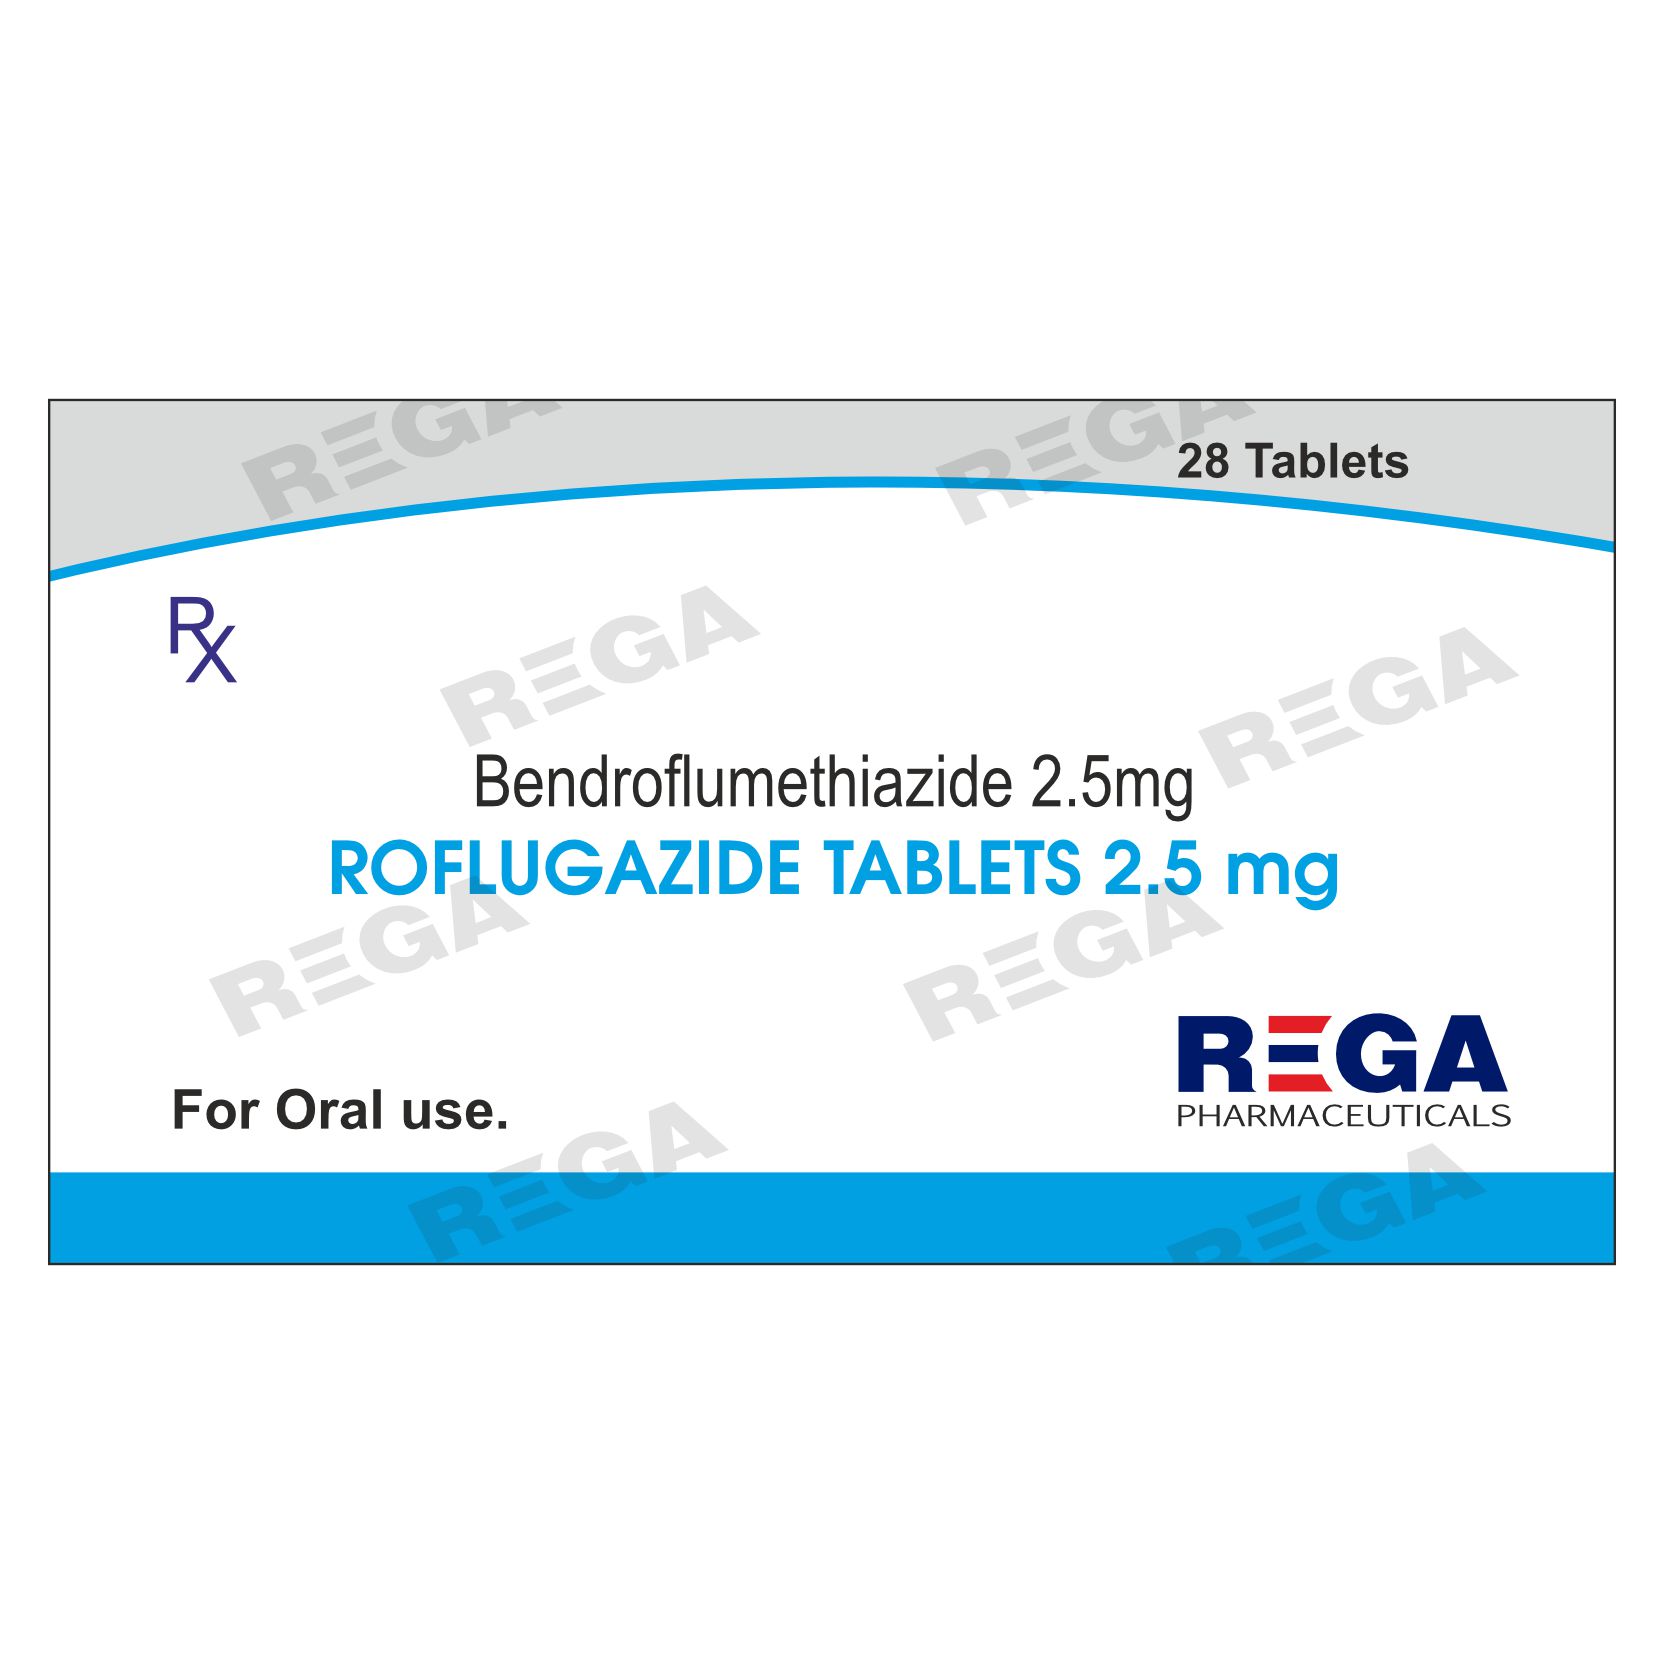 Bendroflumethiazide Tablets 2.5 mg